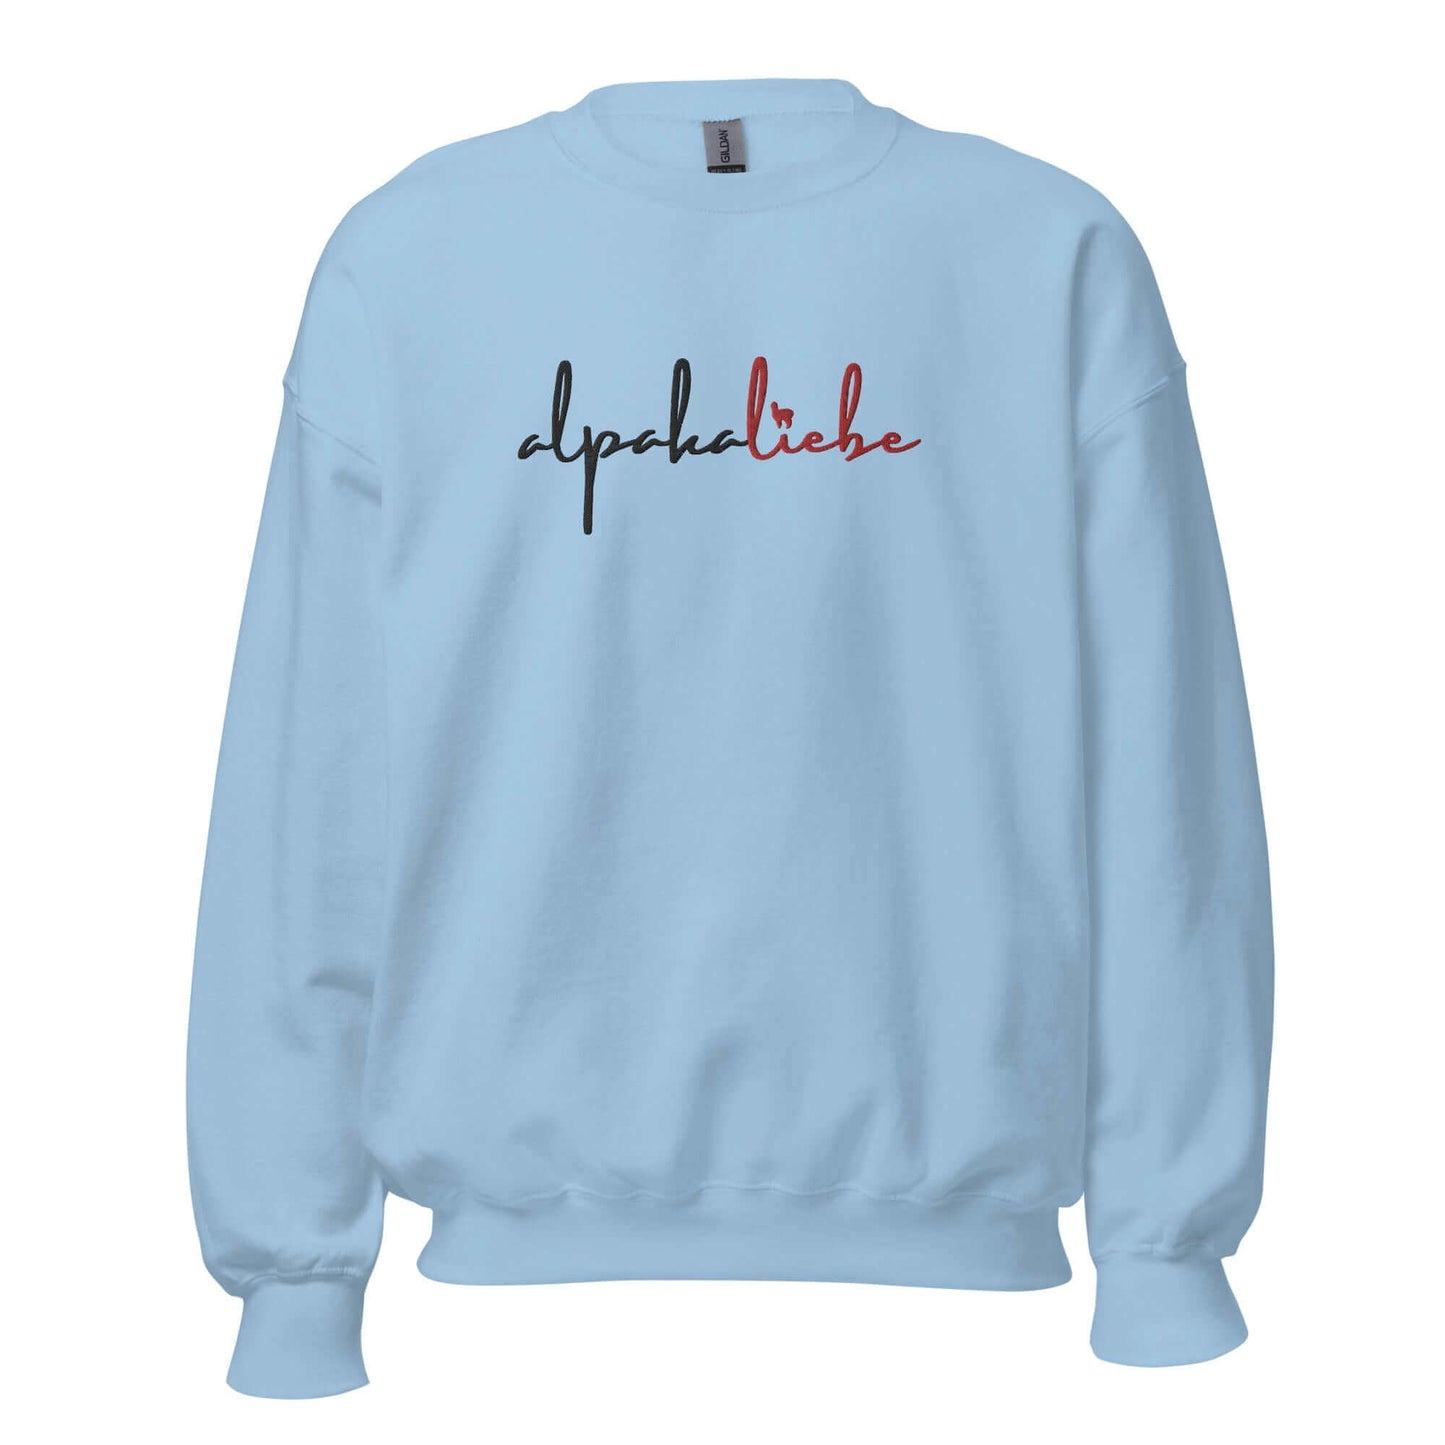 Pullover mit 'alpakaliebe' Stickerei | Selbstgestaltetes Design mit Alpaka-Silhouette | Komfortabler Baumwolle-Mix